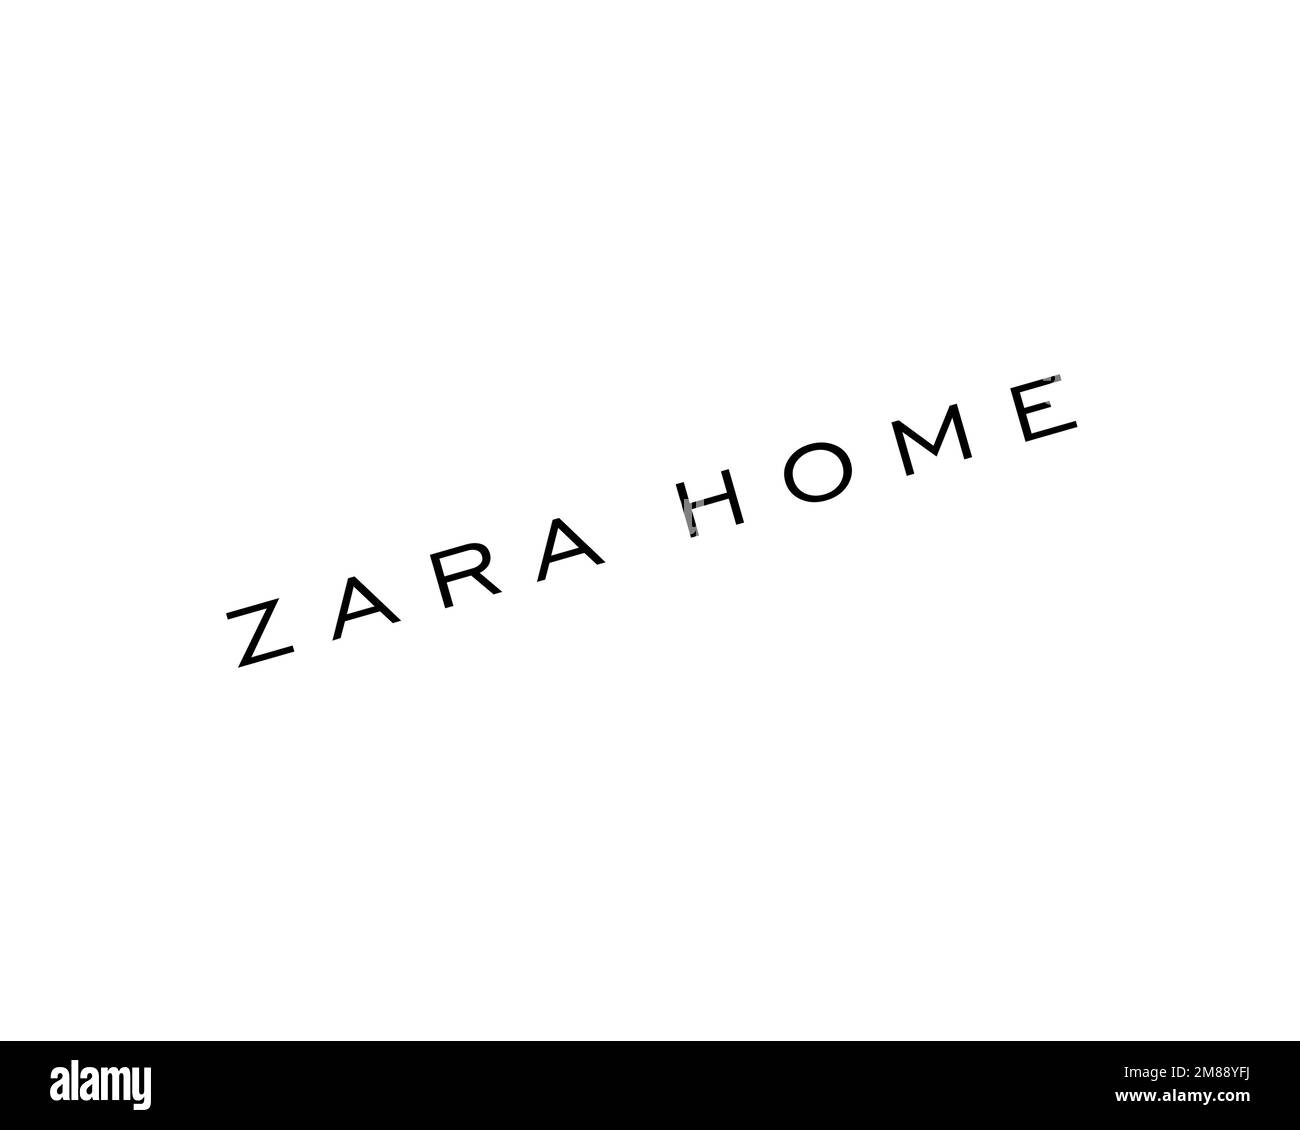 Zara Home, logo pivoté, arrière-plan blanc Banque D'Images